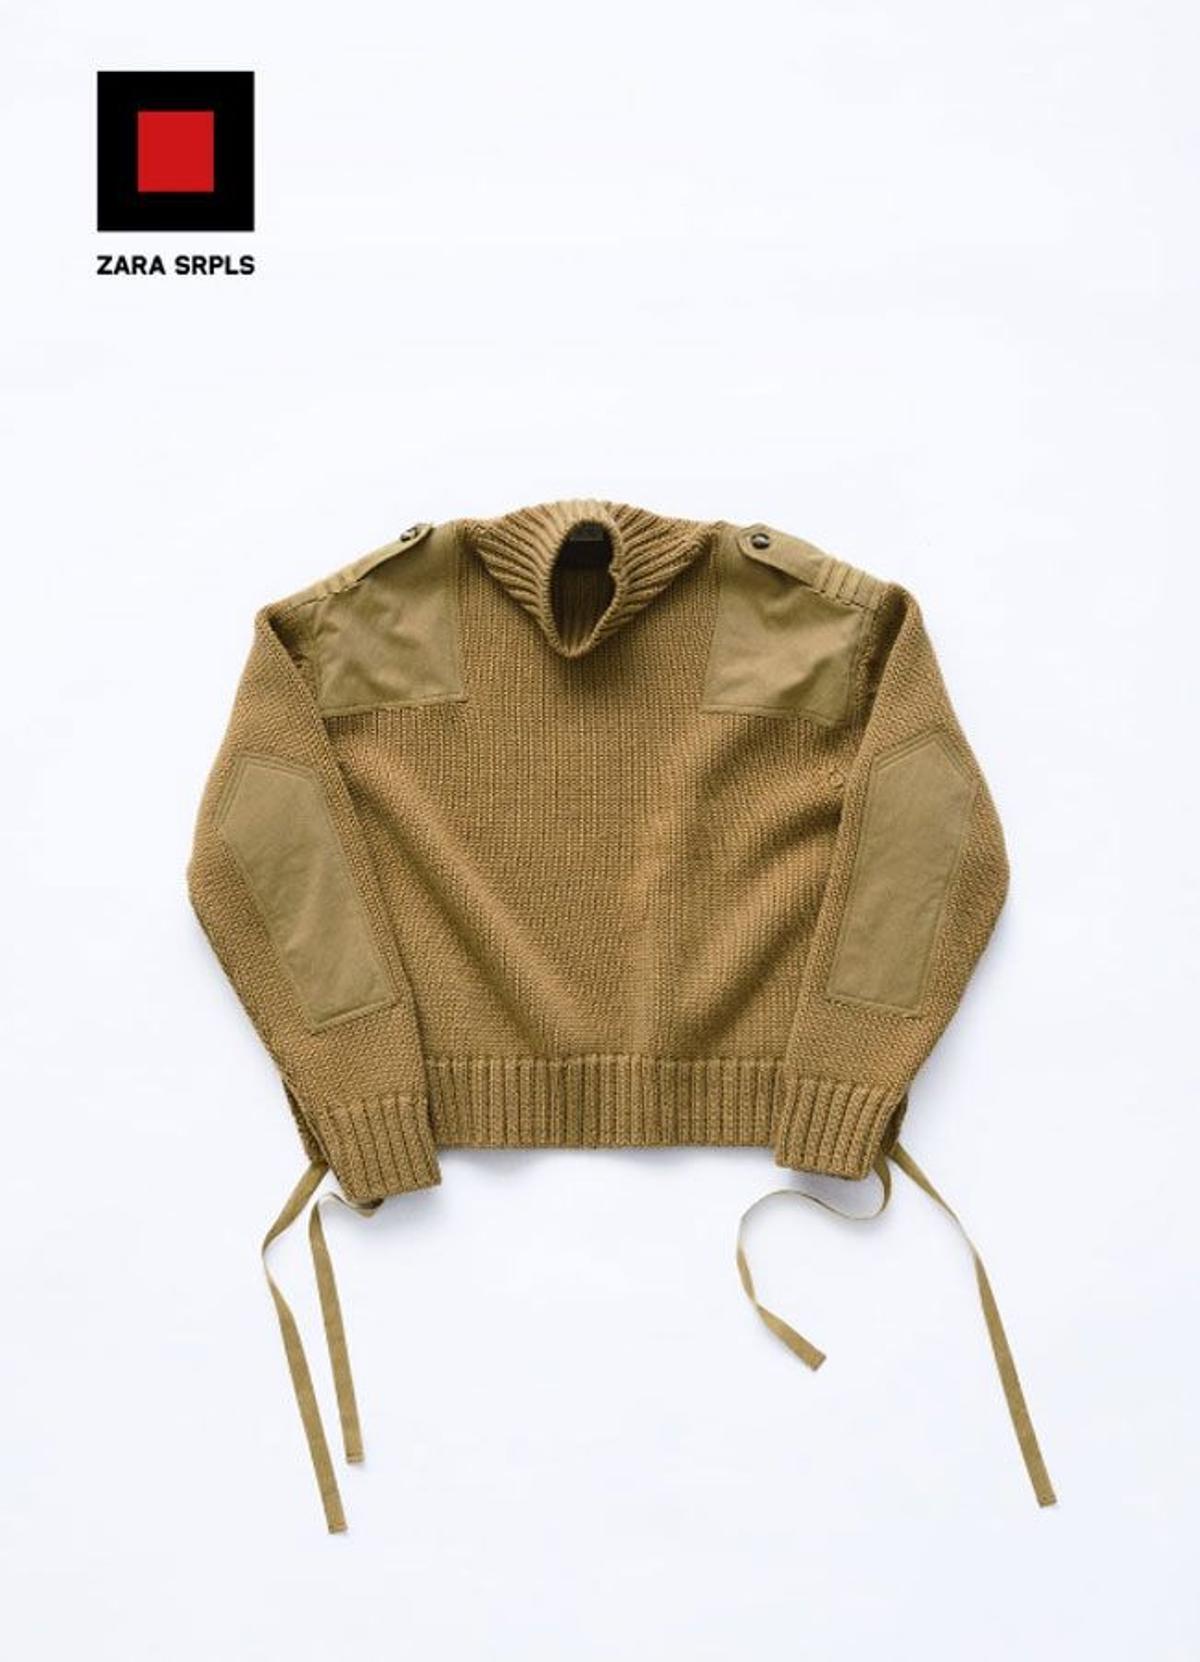 Jersey de lana en color camel de la colección Zara SPRLS